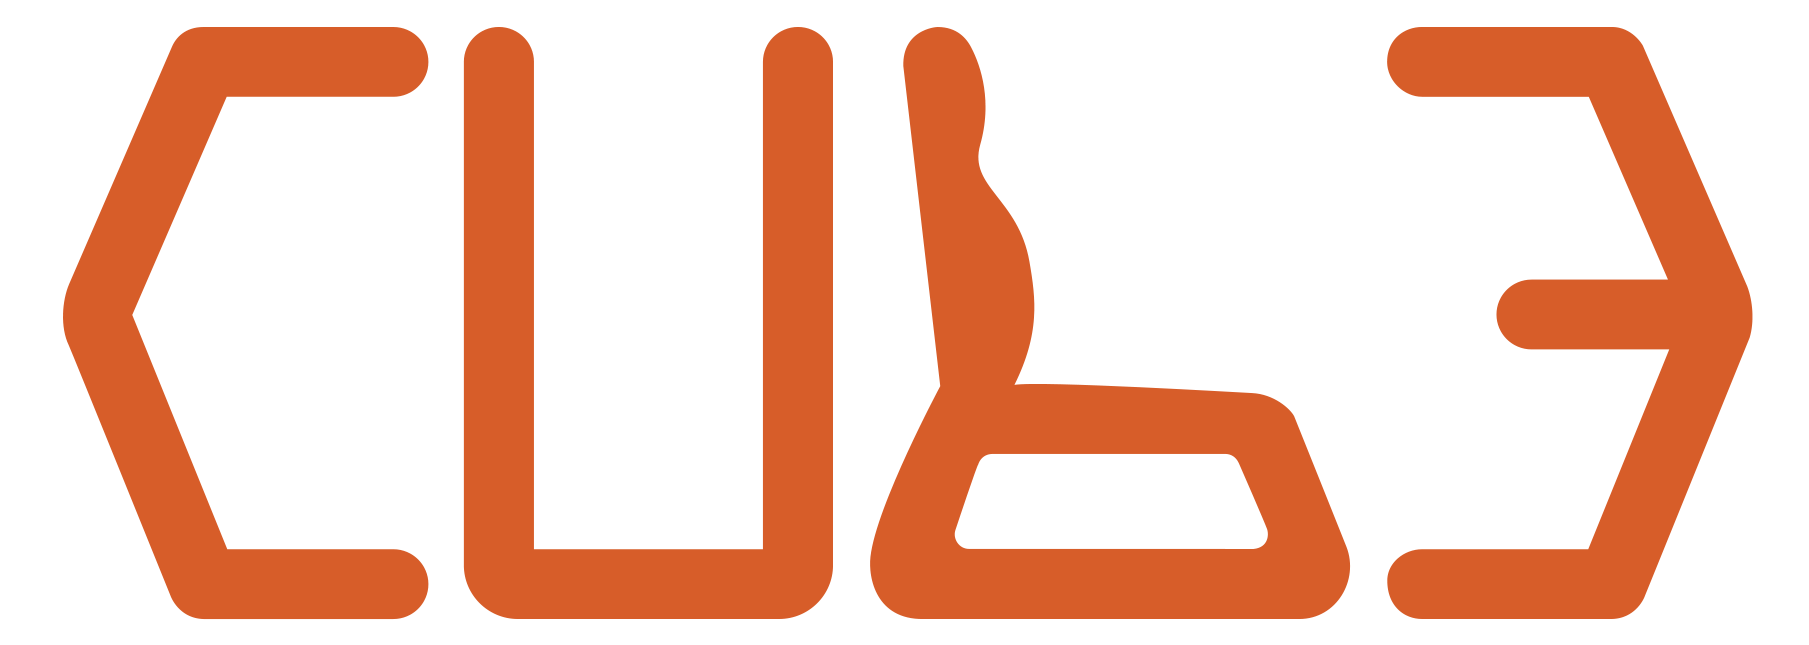 Cube Furniture Logo